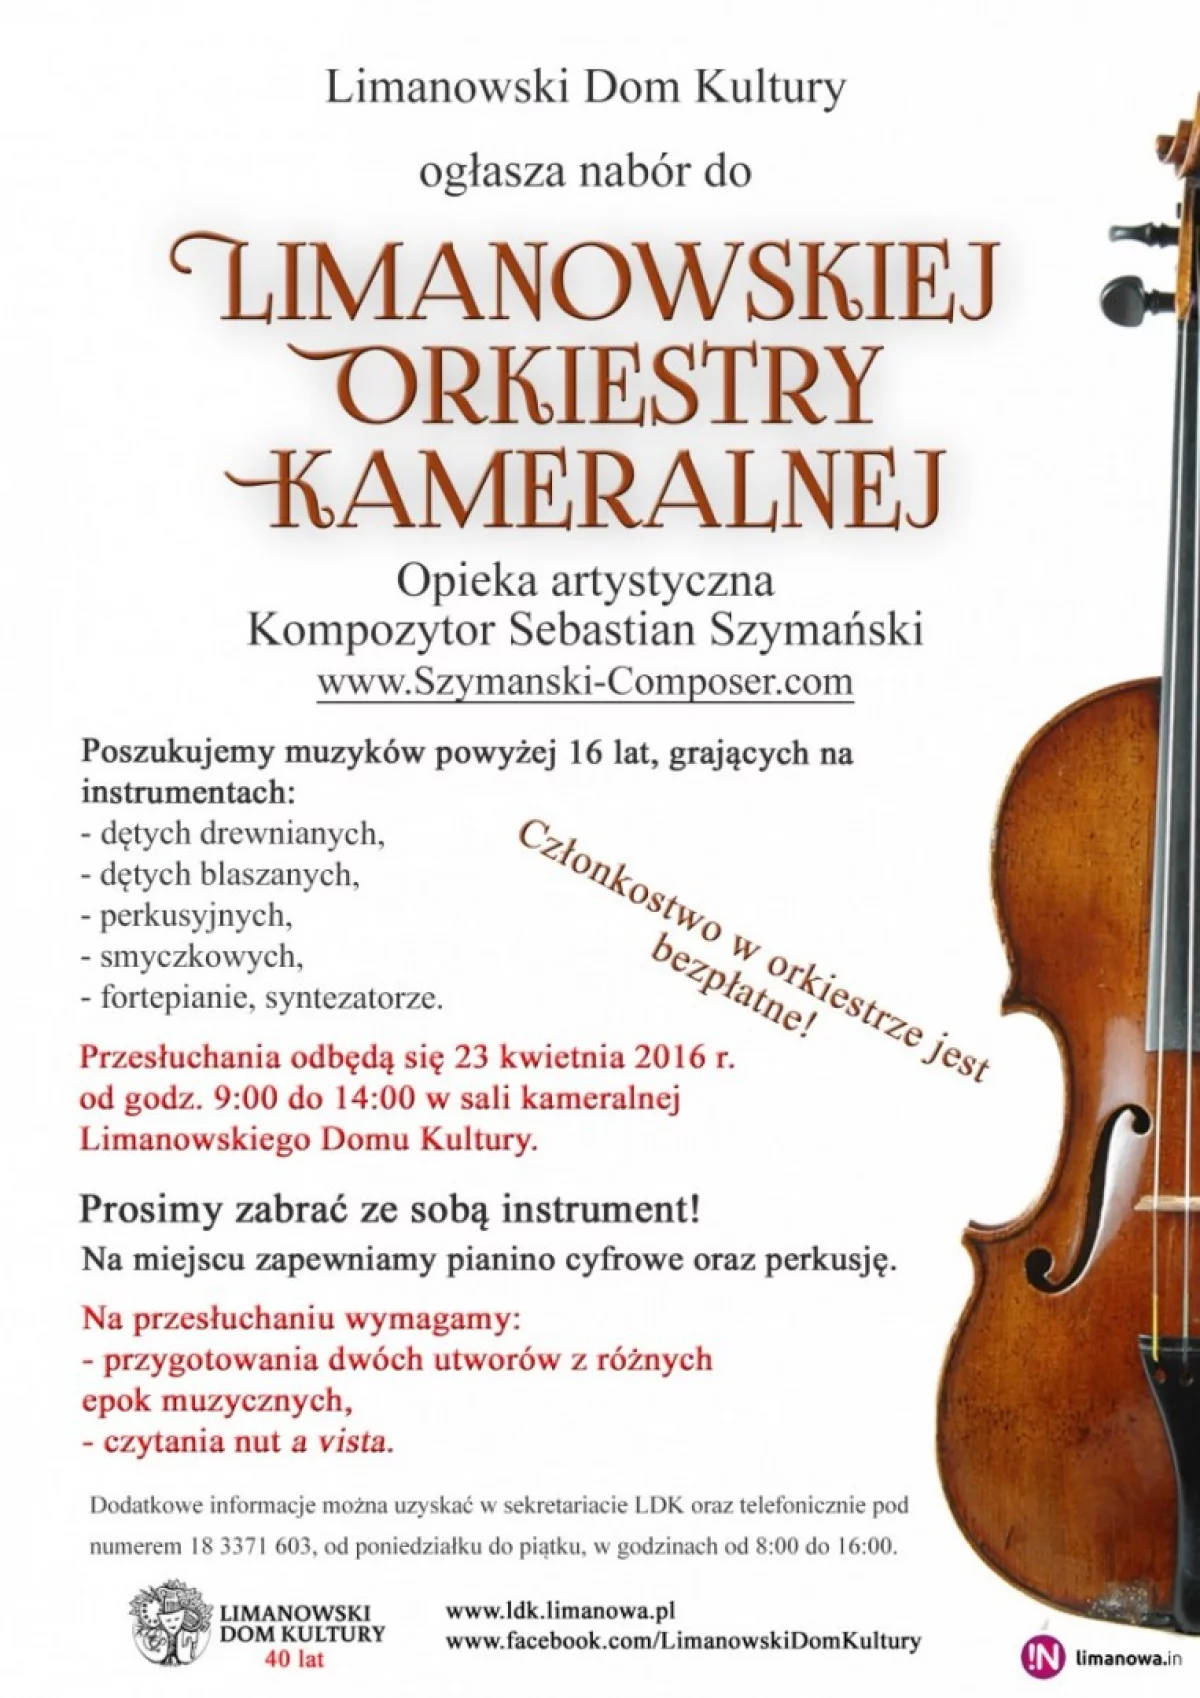 Limanowska Orkiestra Kameralna - rusza nowy projekt muzyczny